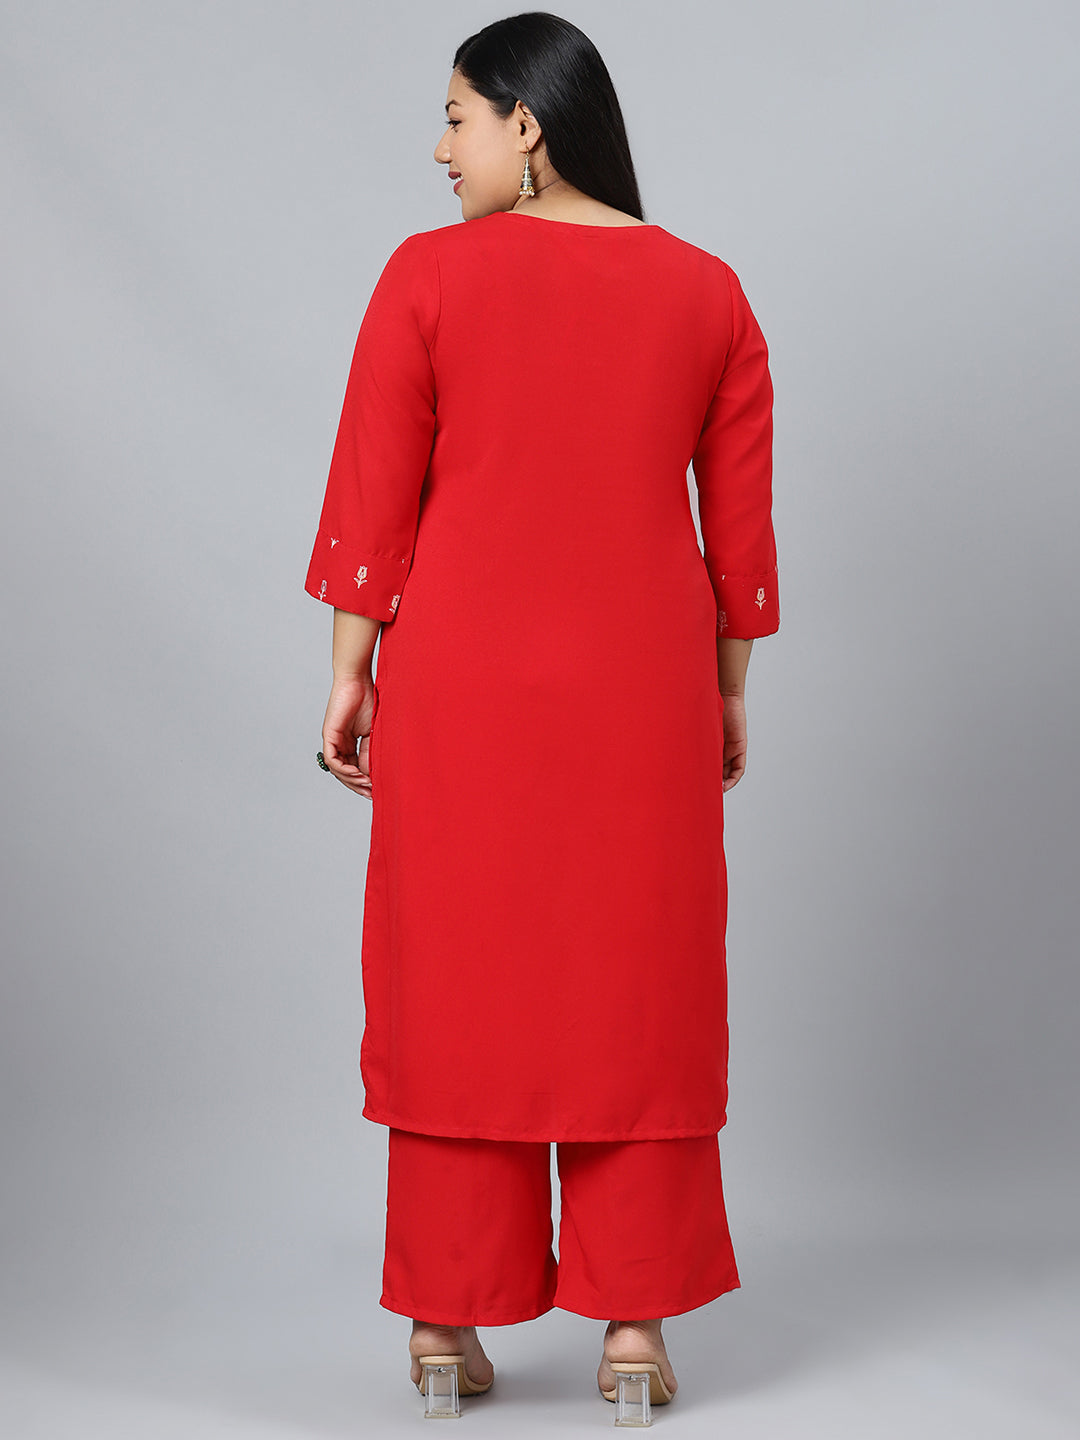 Women's Red Khadi Print Rayon Kurta With Palazzo by Ziyaa- (2pcs set)